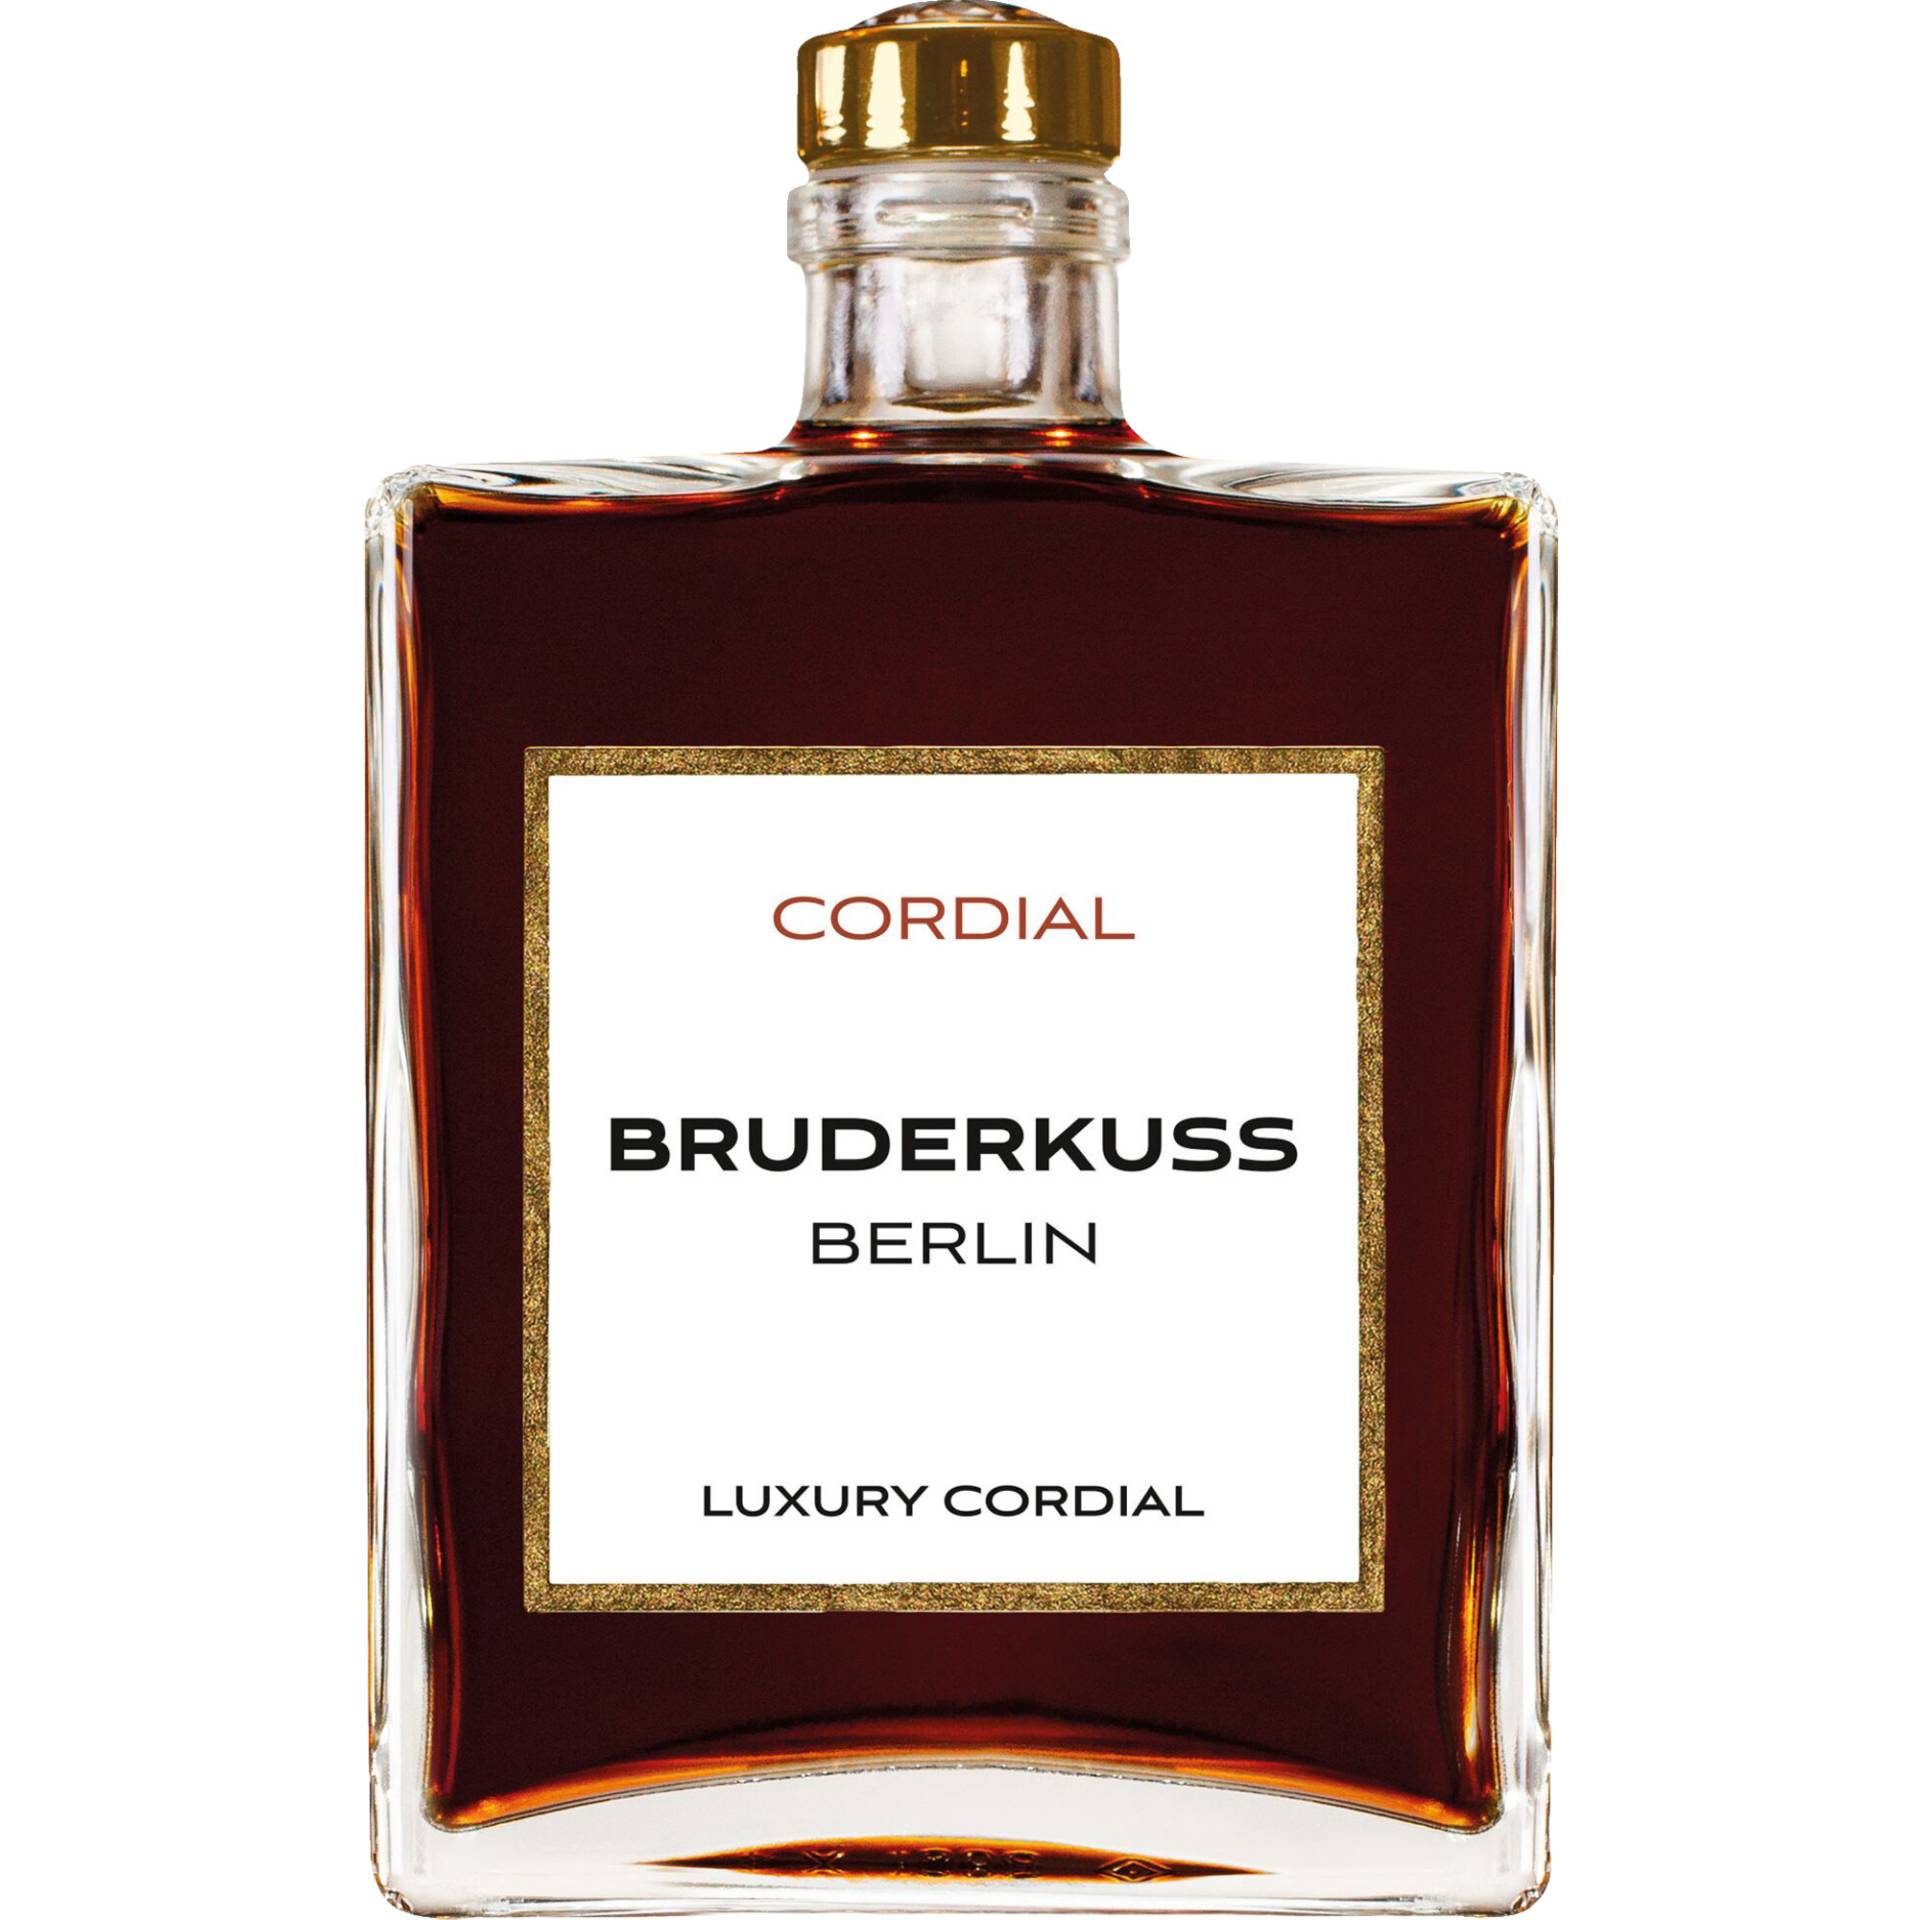 Bruderkuss Luxury Cordial Kräuterlikör, 30% Vol, 0,5L, Pfalz, Spirituosen von Grand Cru Select Distributionsgesellschaft mbH,53227,Bonn,Deutschland